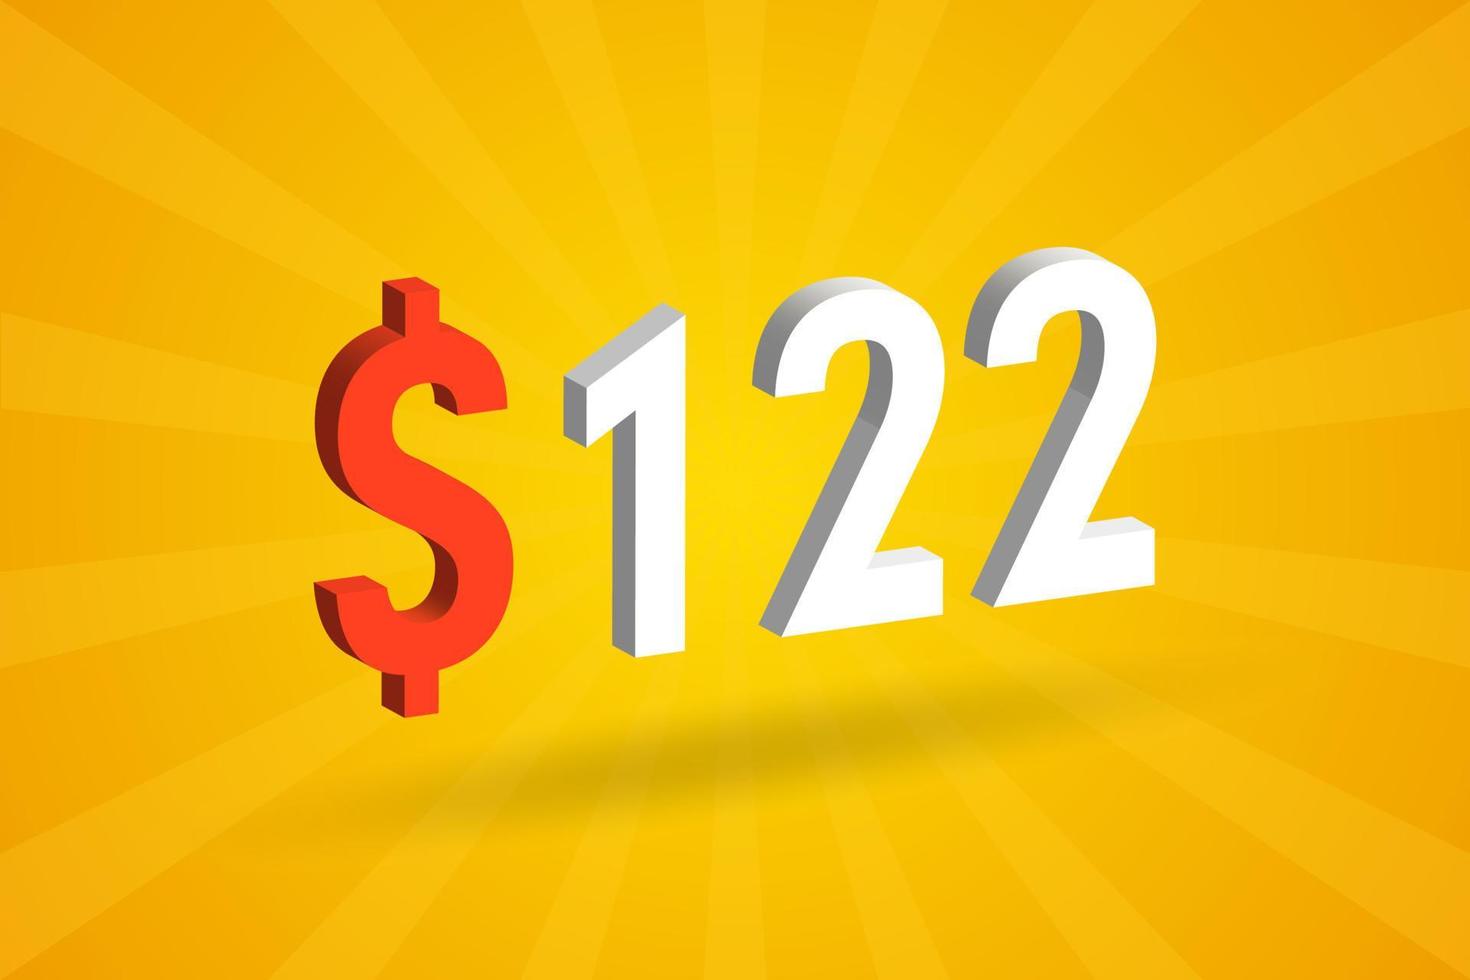 122 usd símbolo de texto 3d. 122 dólar de los estados unidos 3d con fondo amarillo vector de stock de dinero americano